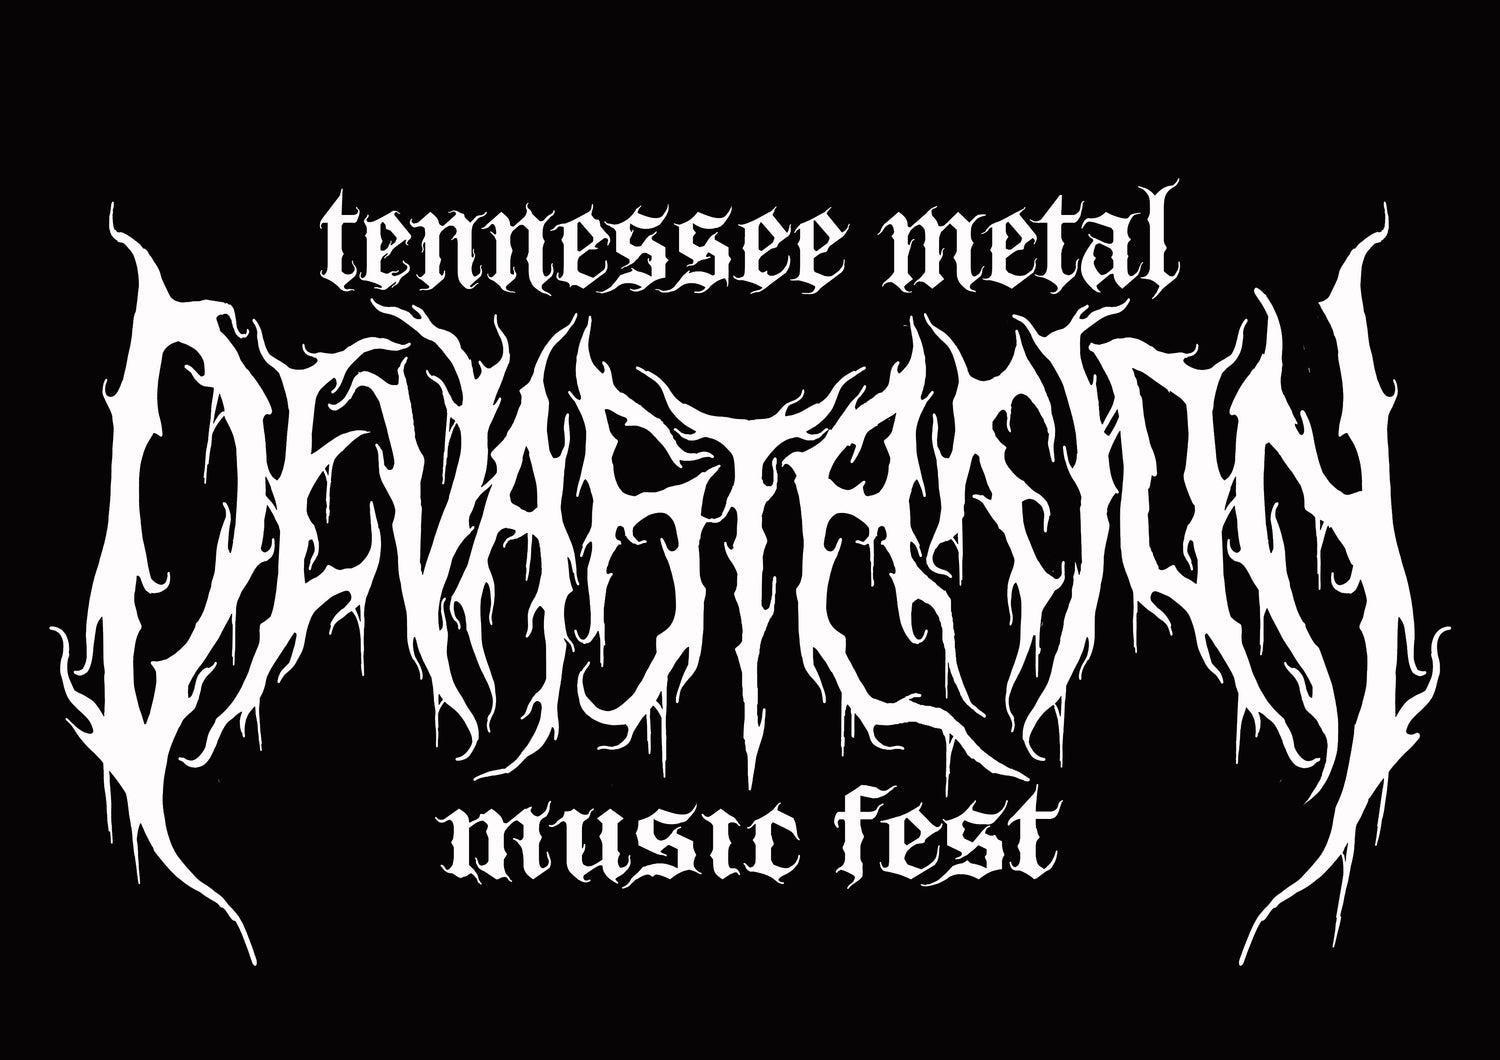 Tennessee Metal Devastation Music Fest 2022